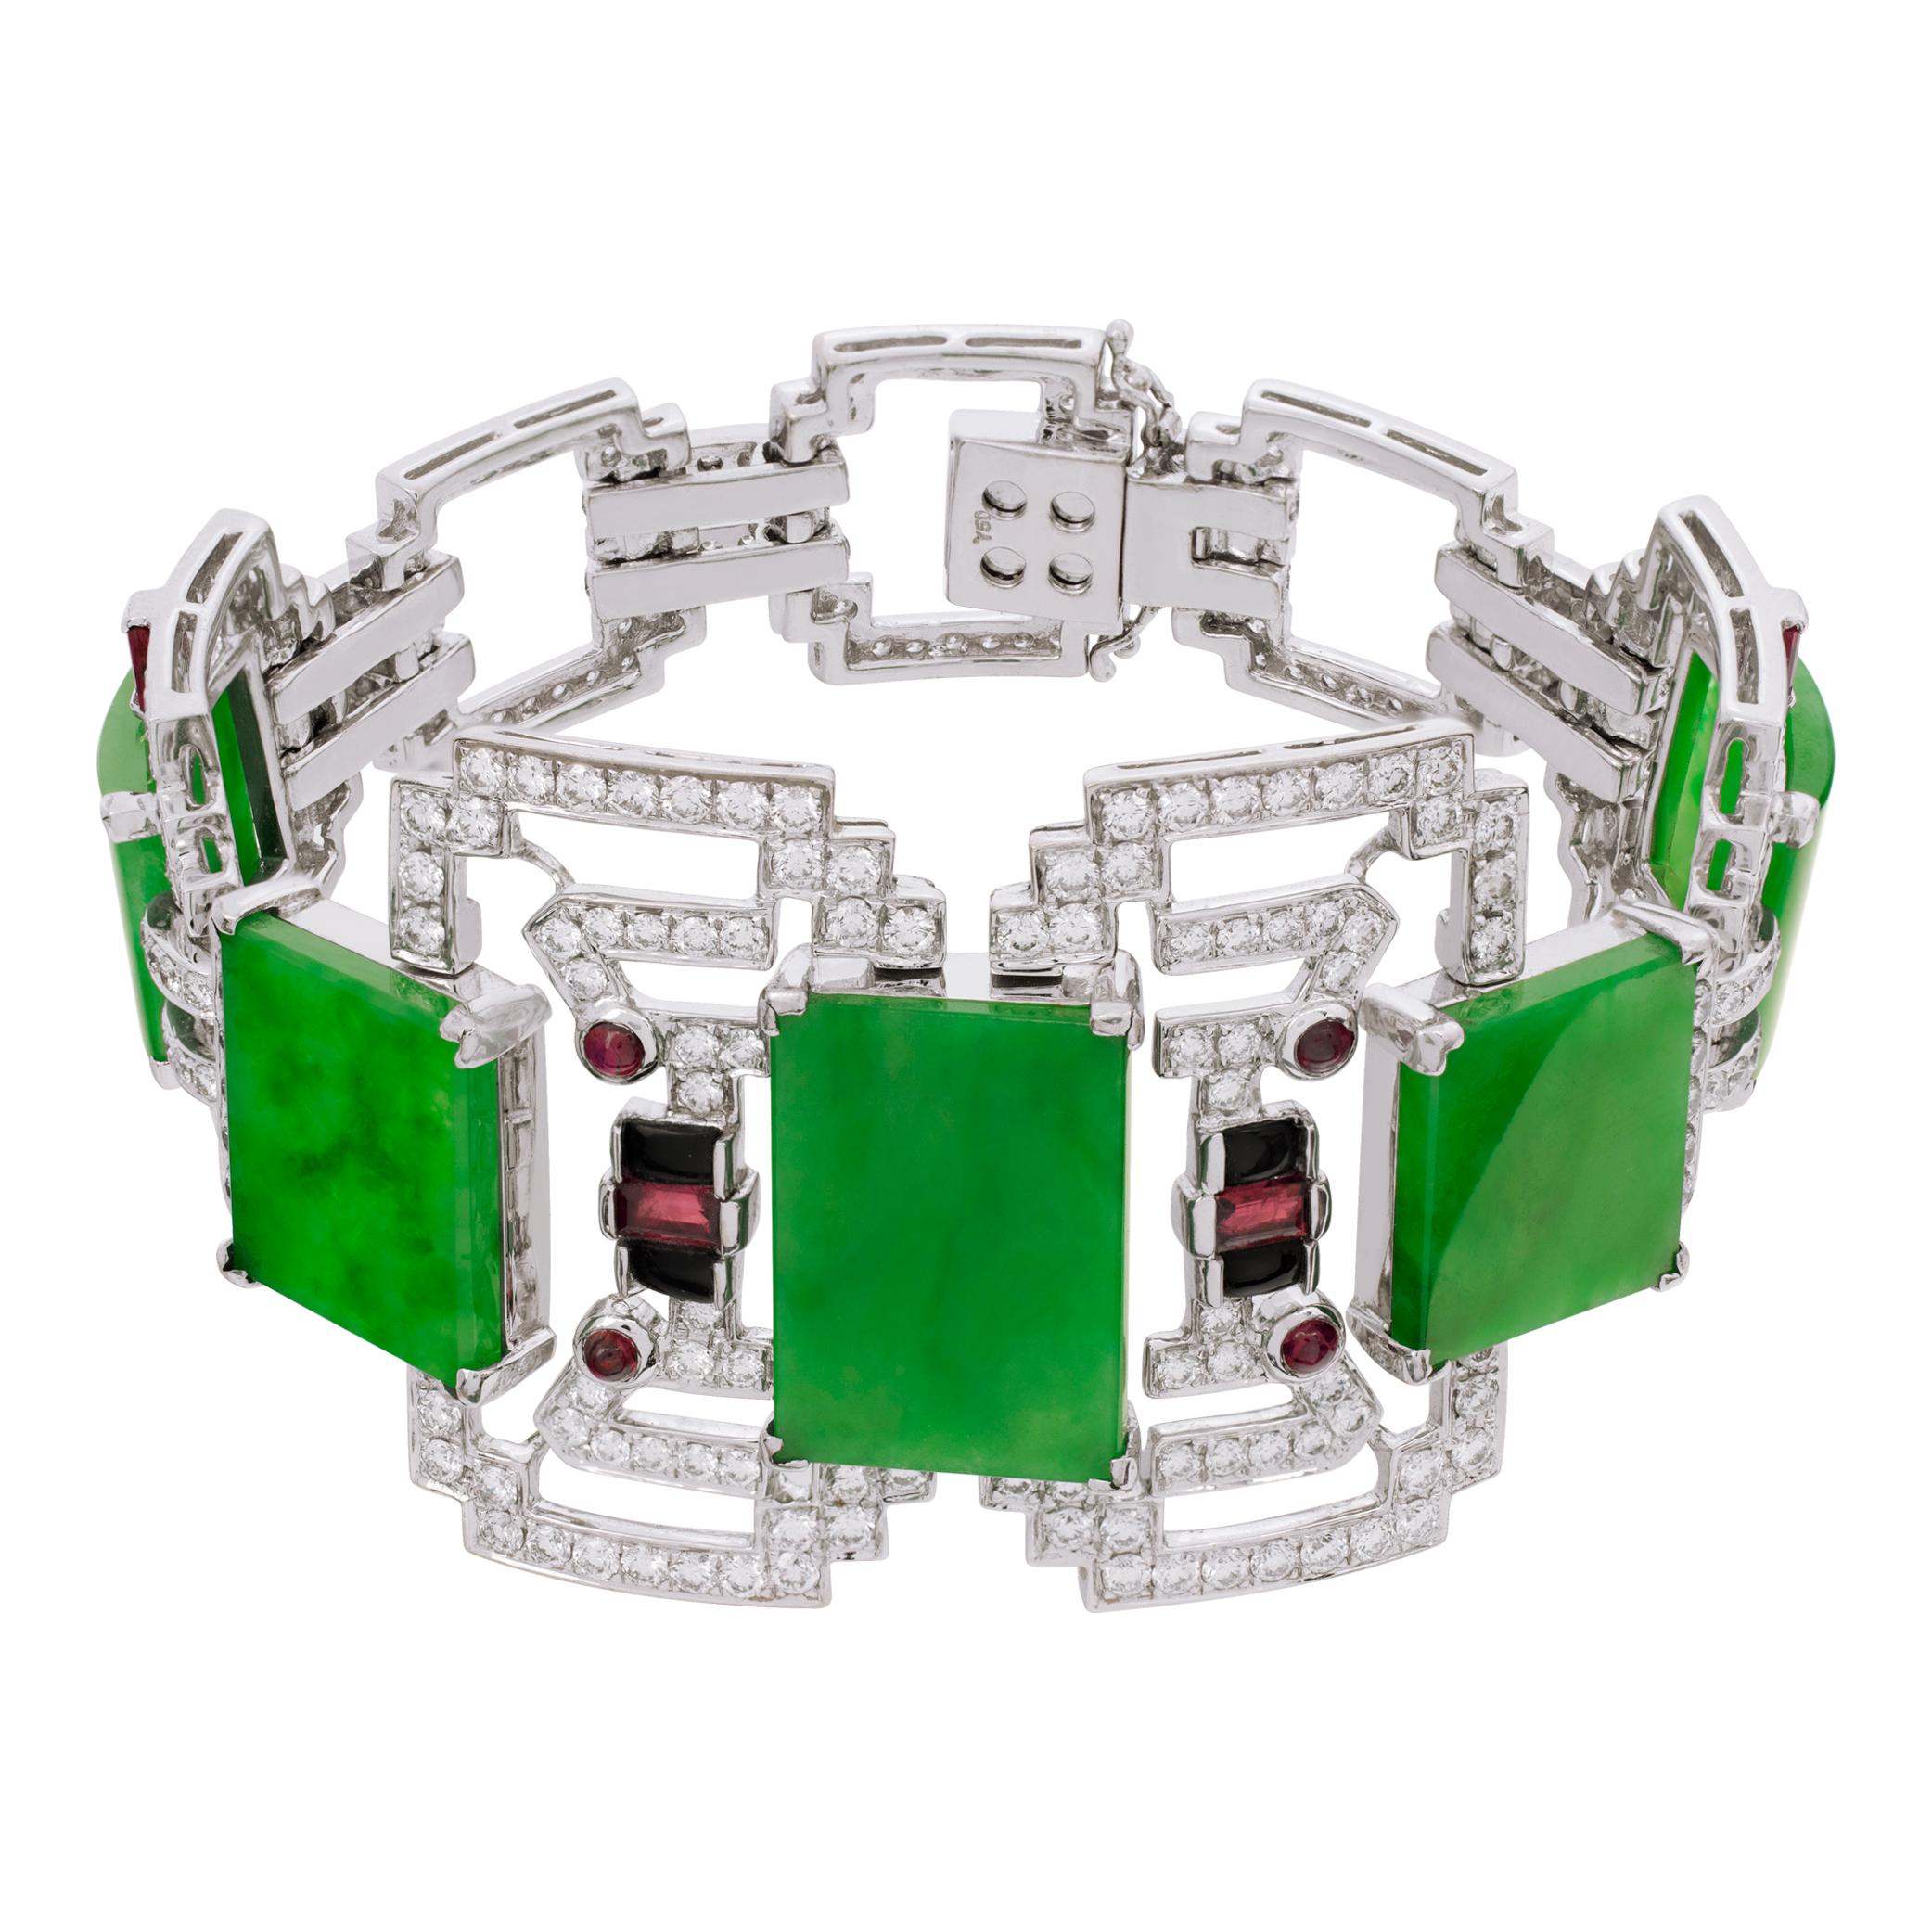 Art Deco inspiriertes Armband aus Jade und Diamanten aus 18k Weißgold mit Rubinen und Onyx